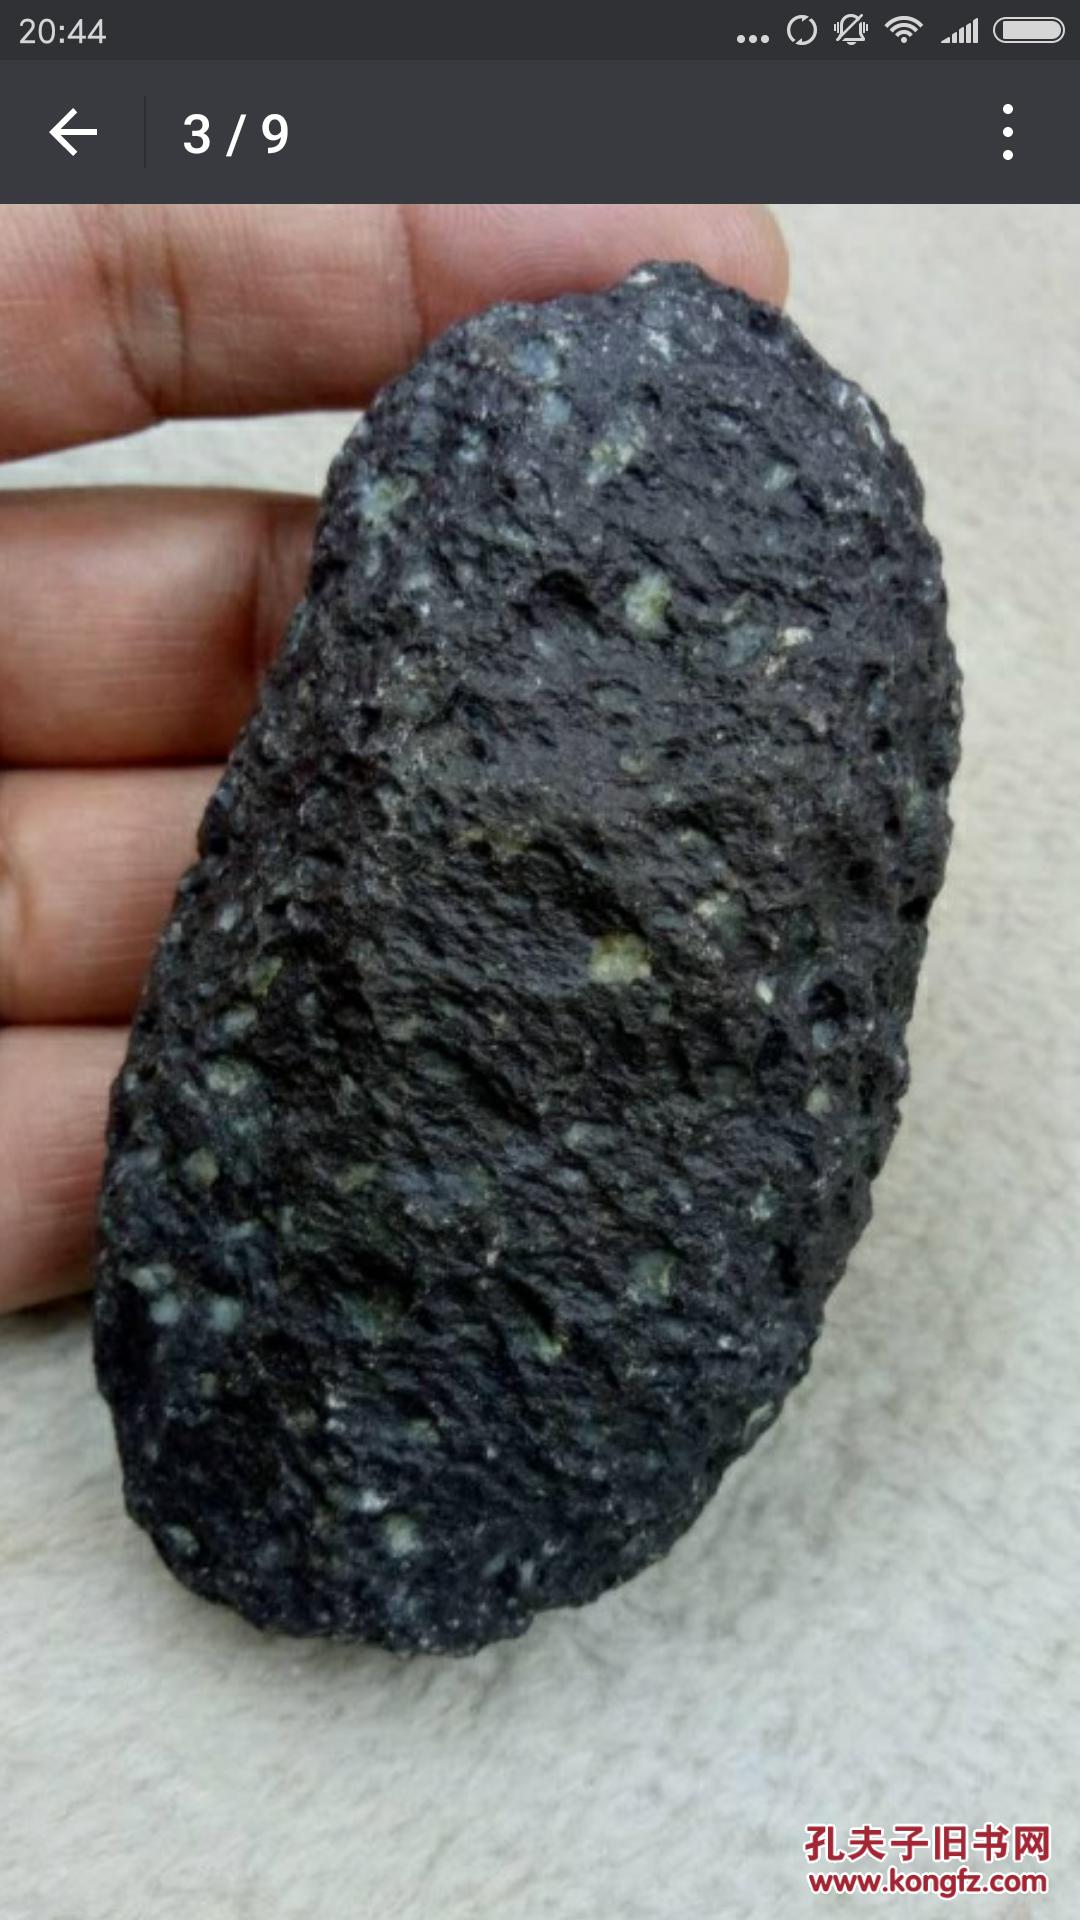 新疆捡的 陨石 非常珍贵   仿佛一颗滑落的流星